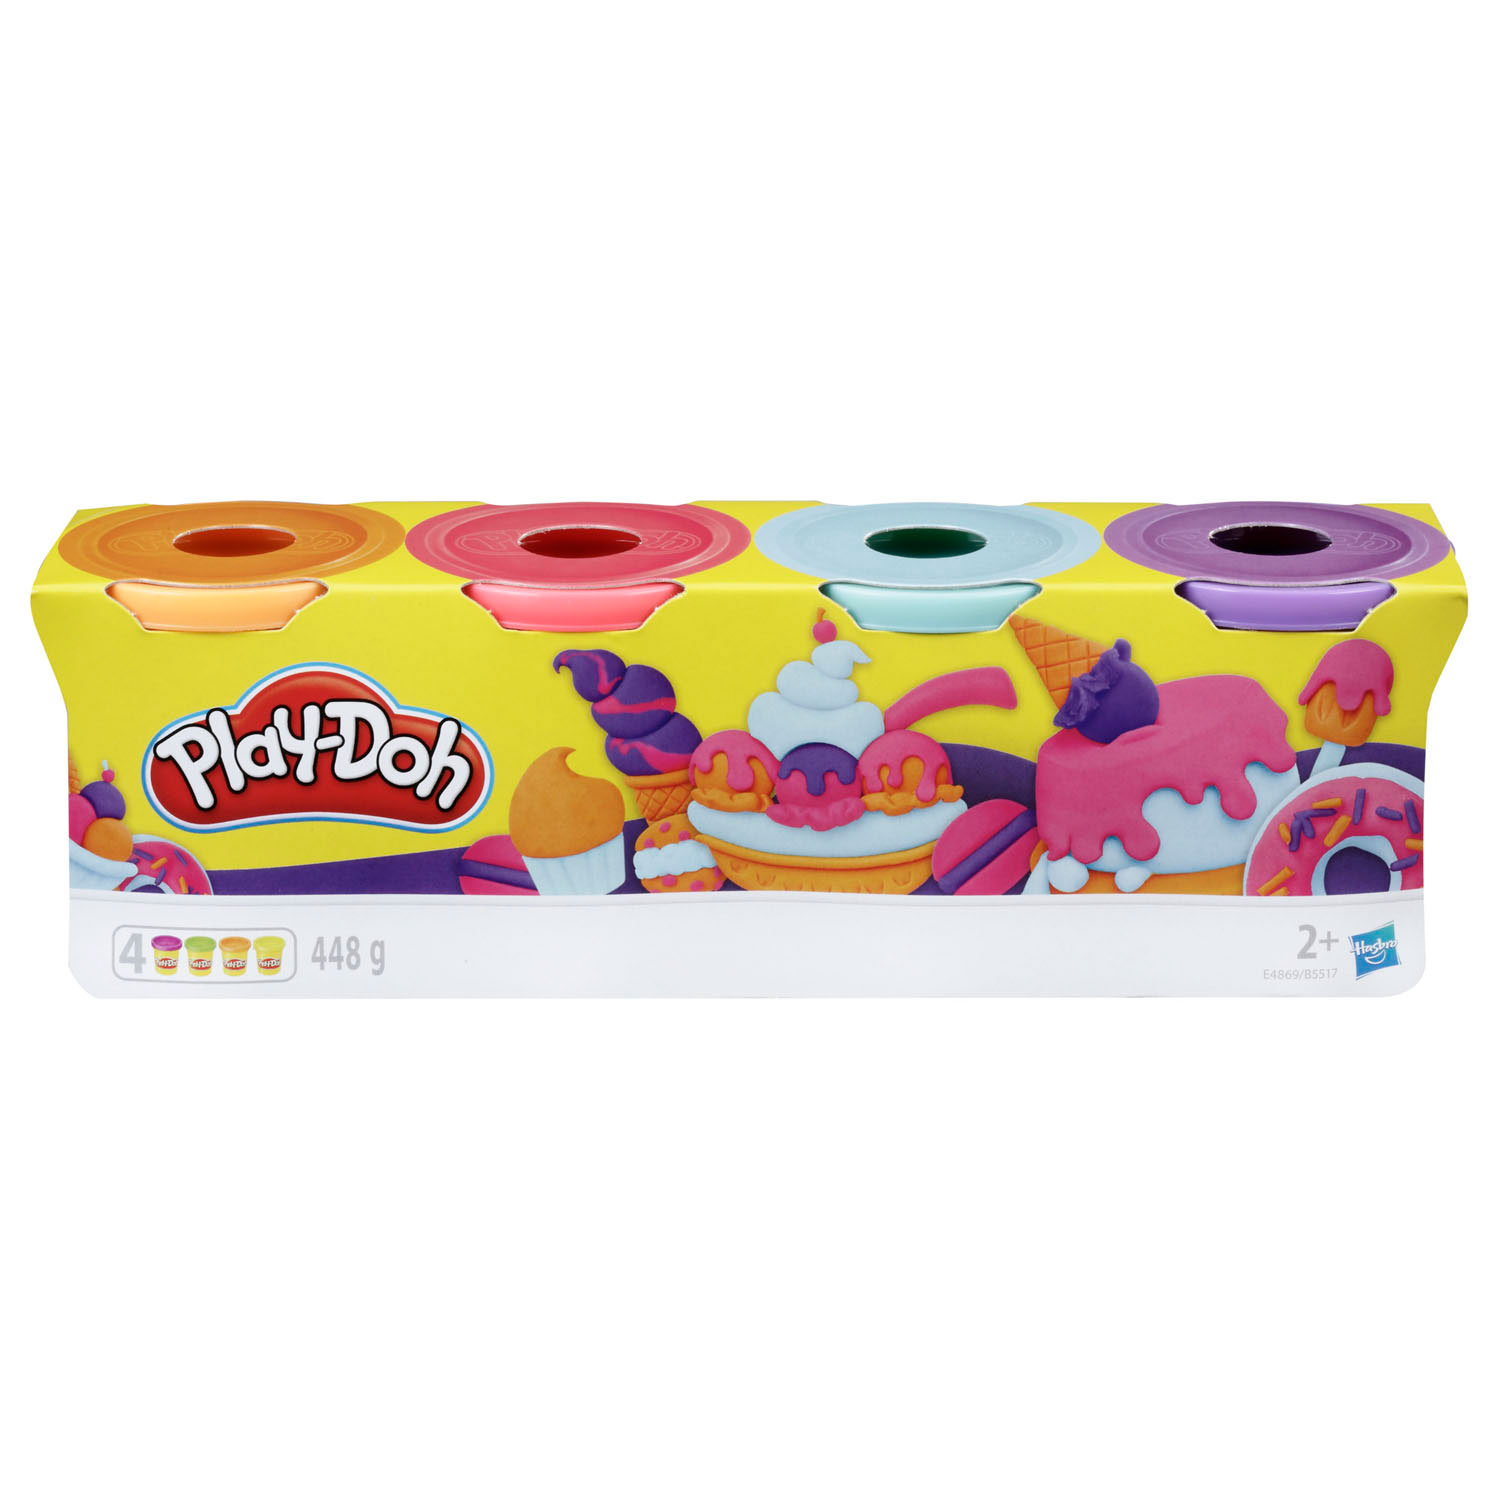 Play-Doh 4er-Pack (Süße Farben)